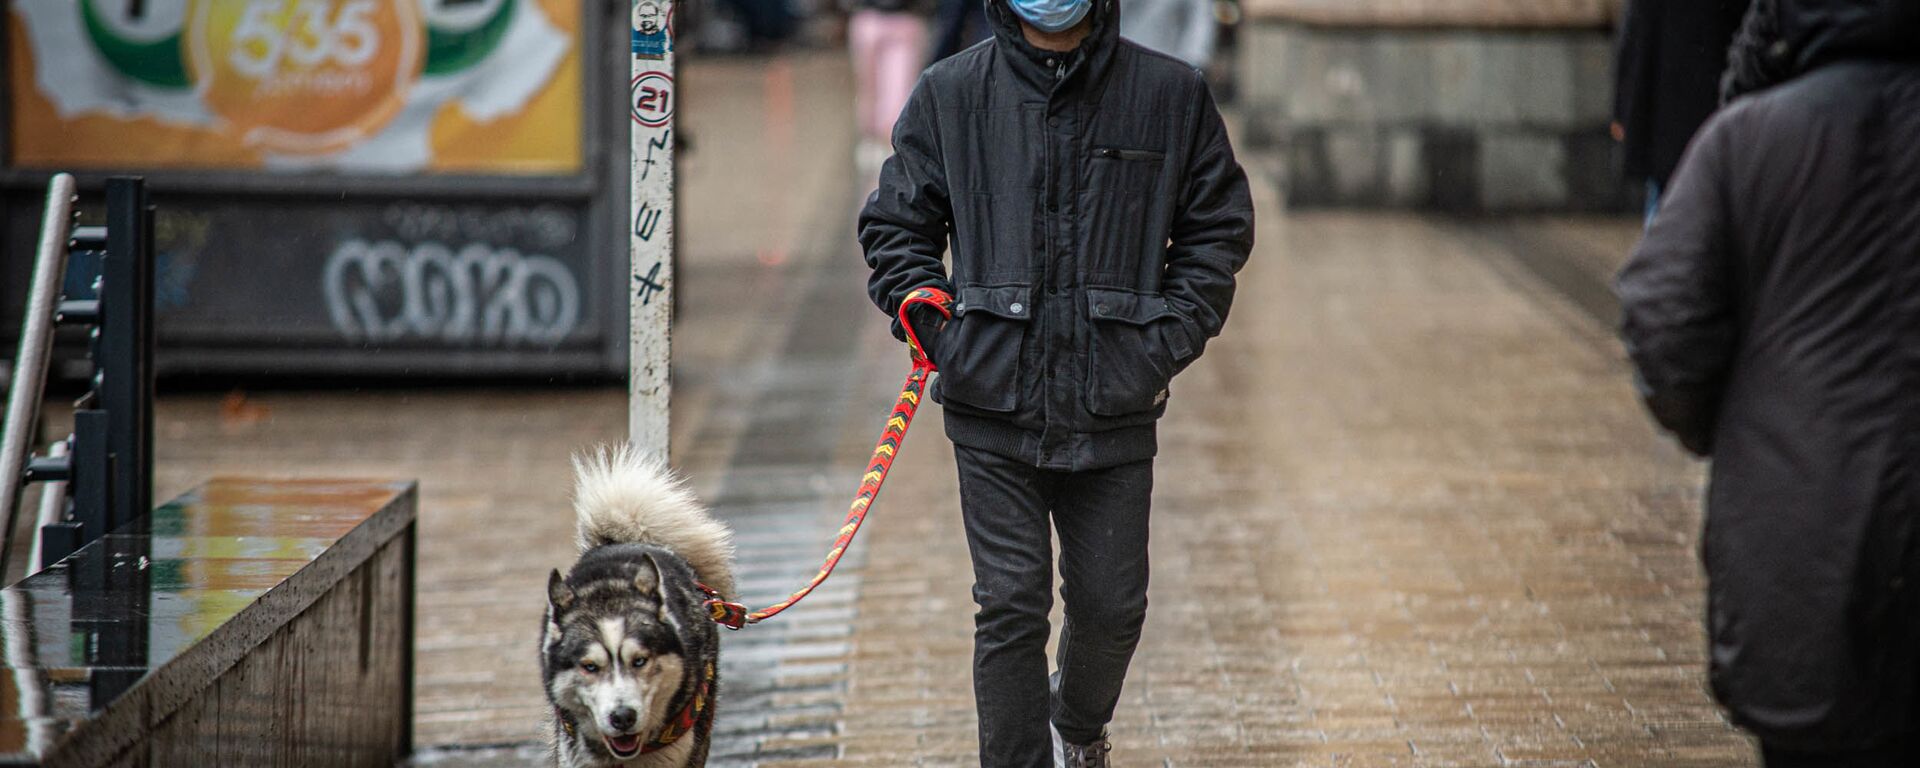 Эпидемия коронавируса - прохожие в масках на улицах грузинской столицы в дождь - Sputnik Грузия, 1920, 25.04.2021